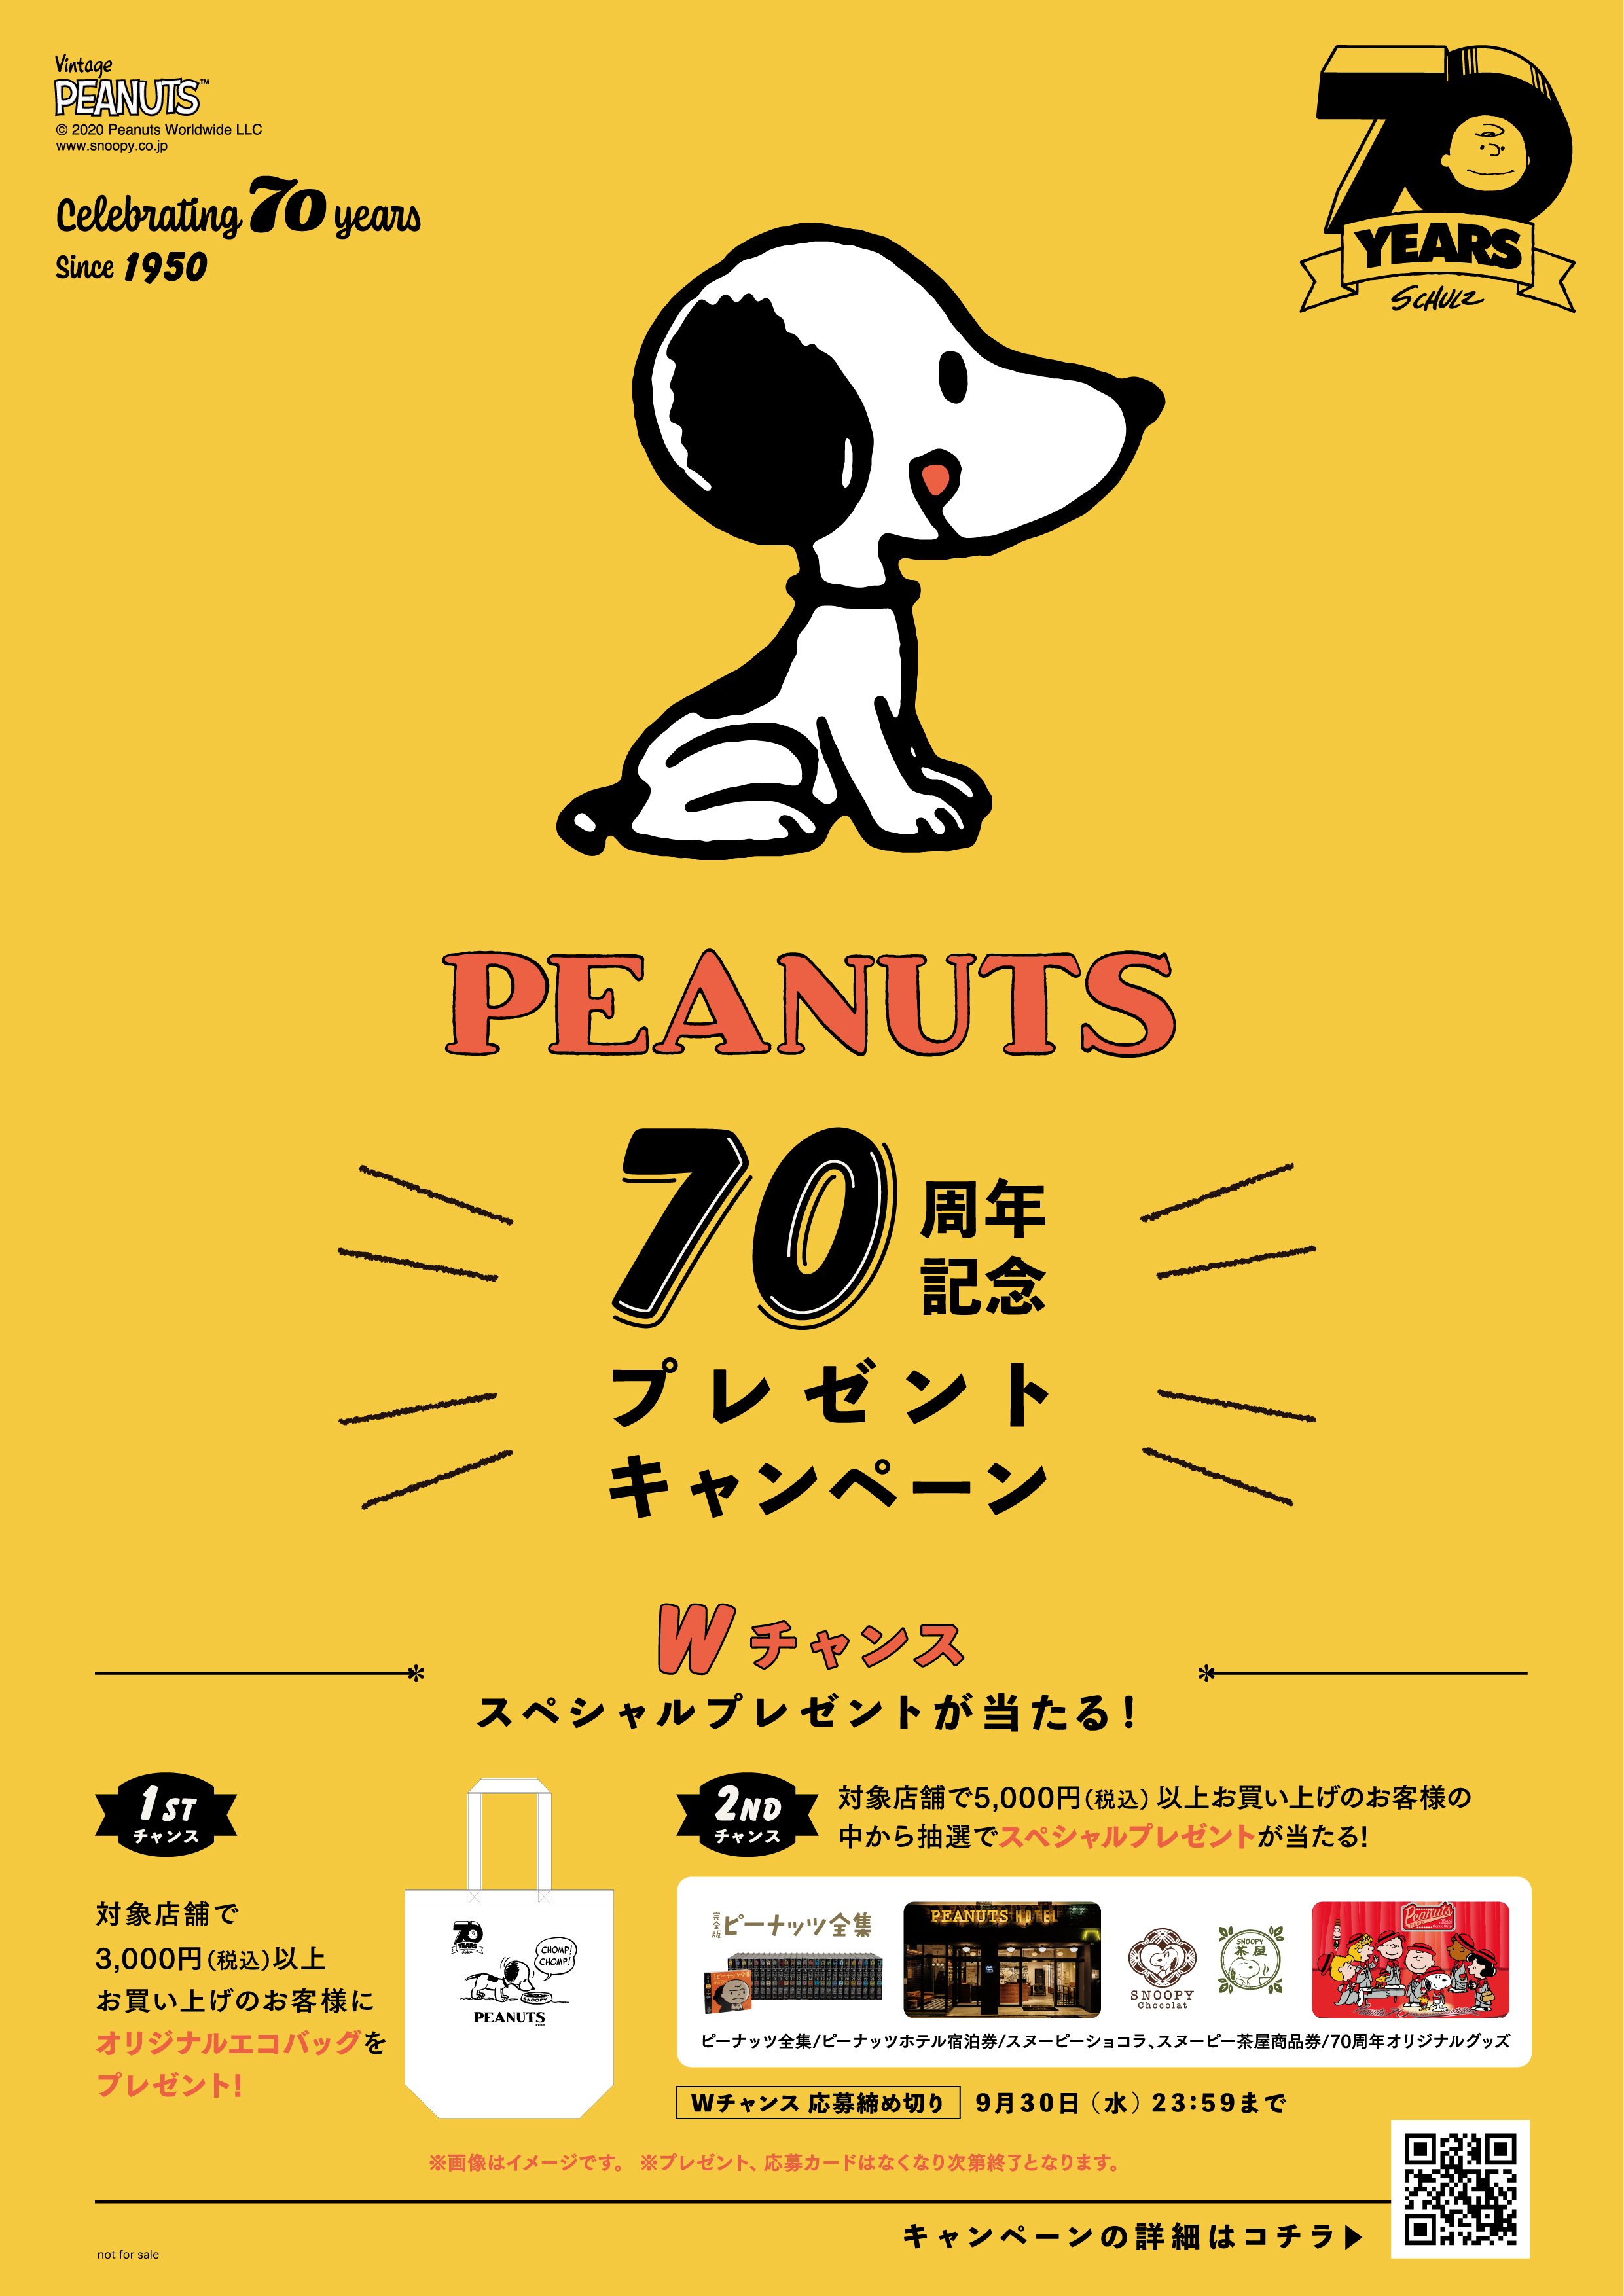 お買い上げプレゼント 抽選でスペシャルプレゼントがあたるwチャンス Peanuts 70周年記念プレゼントキャンペーン開催中 年8月7日 エキサイトニュース